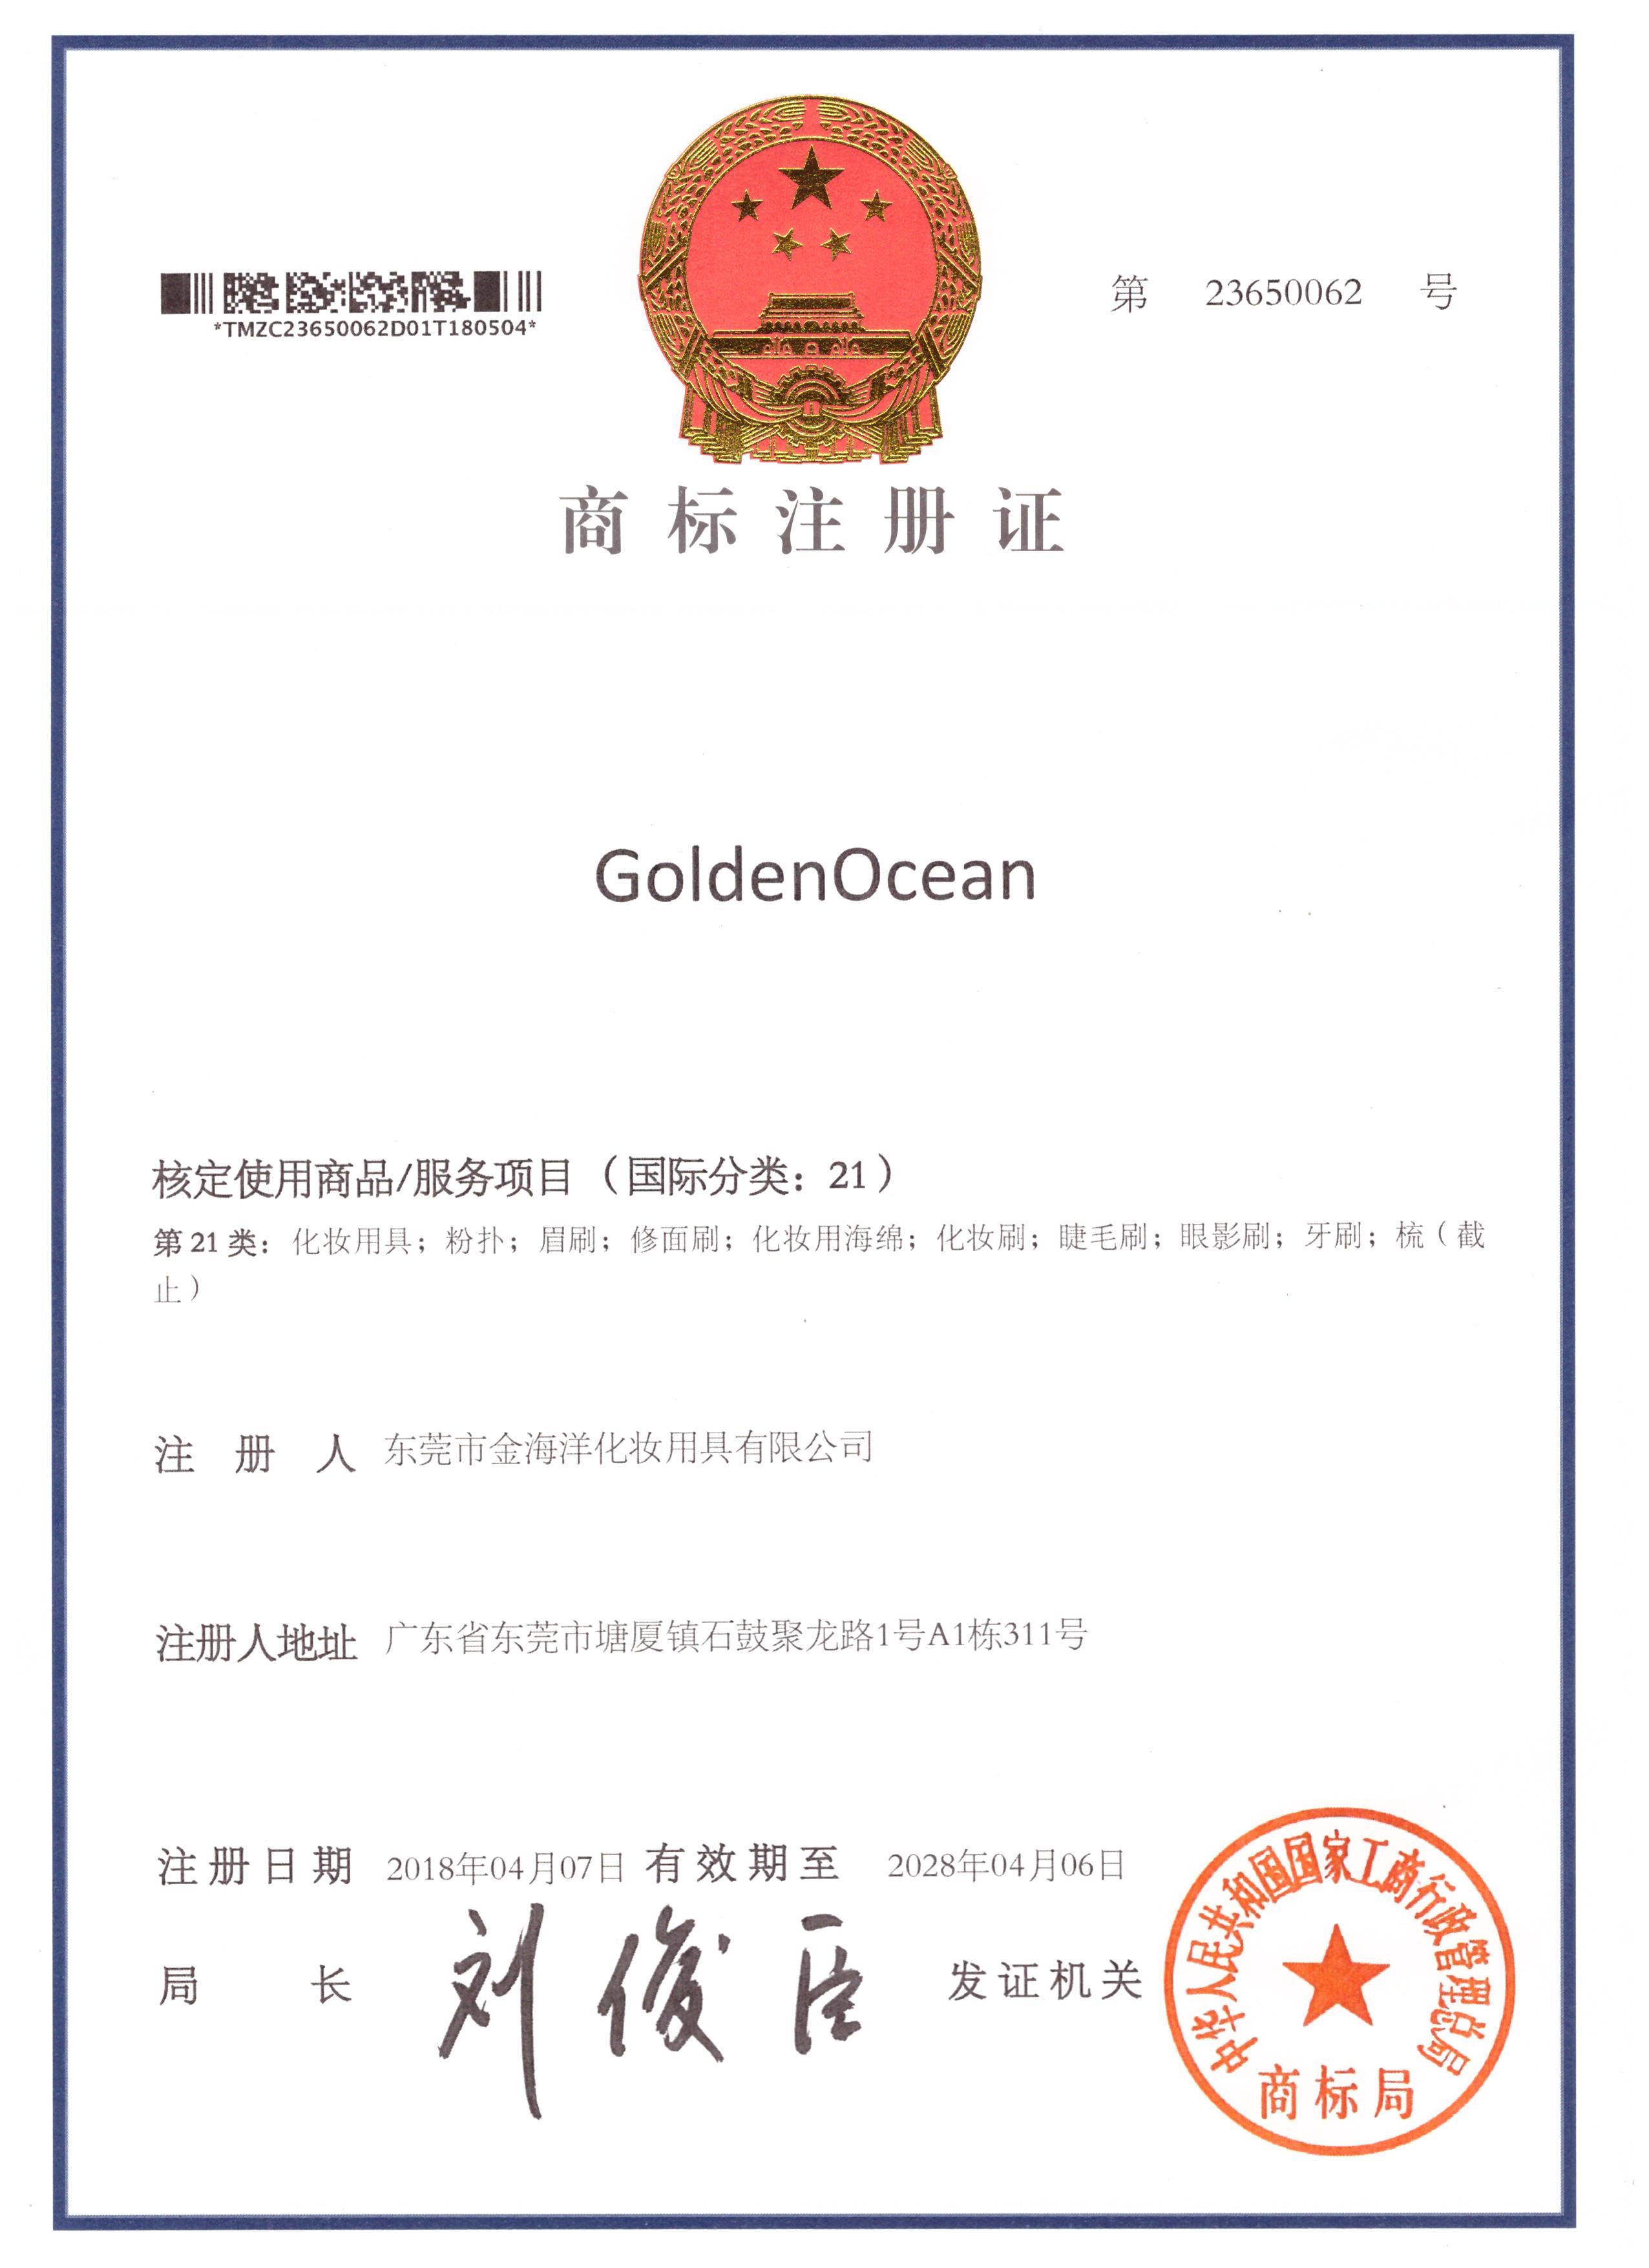 GoldenOcean